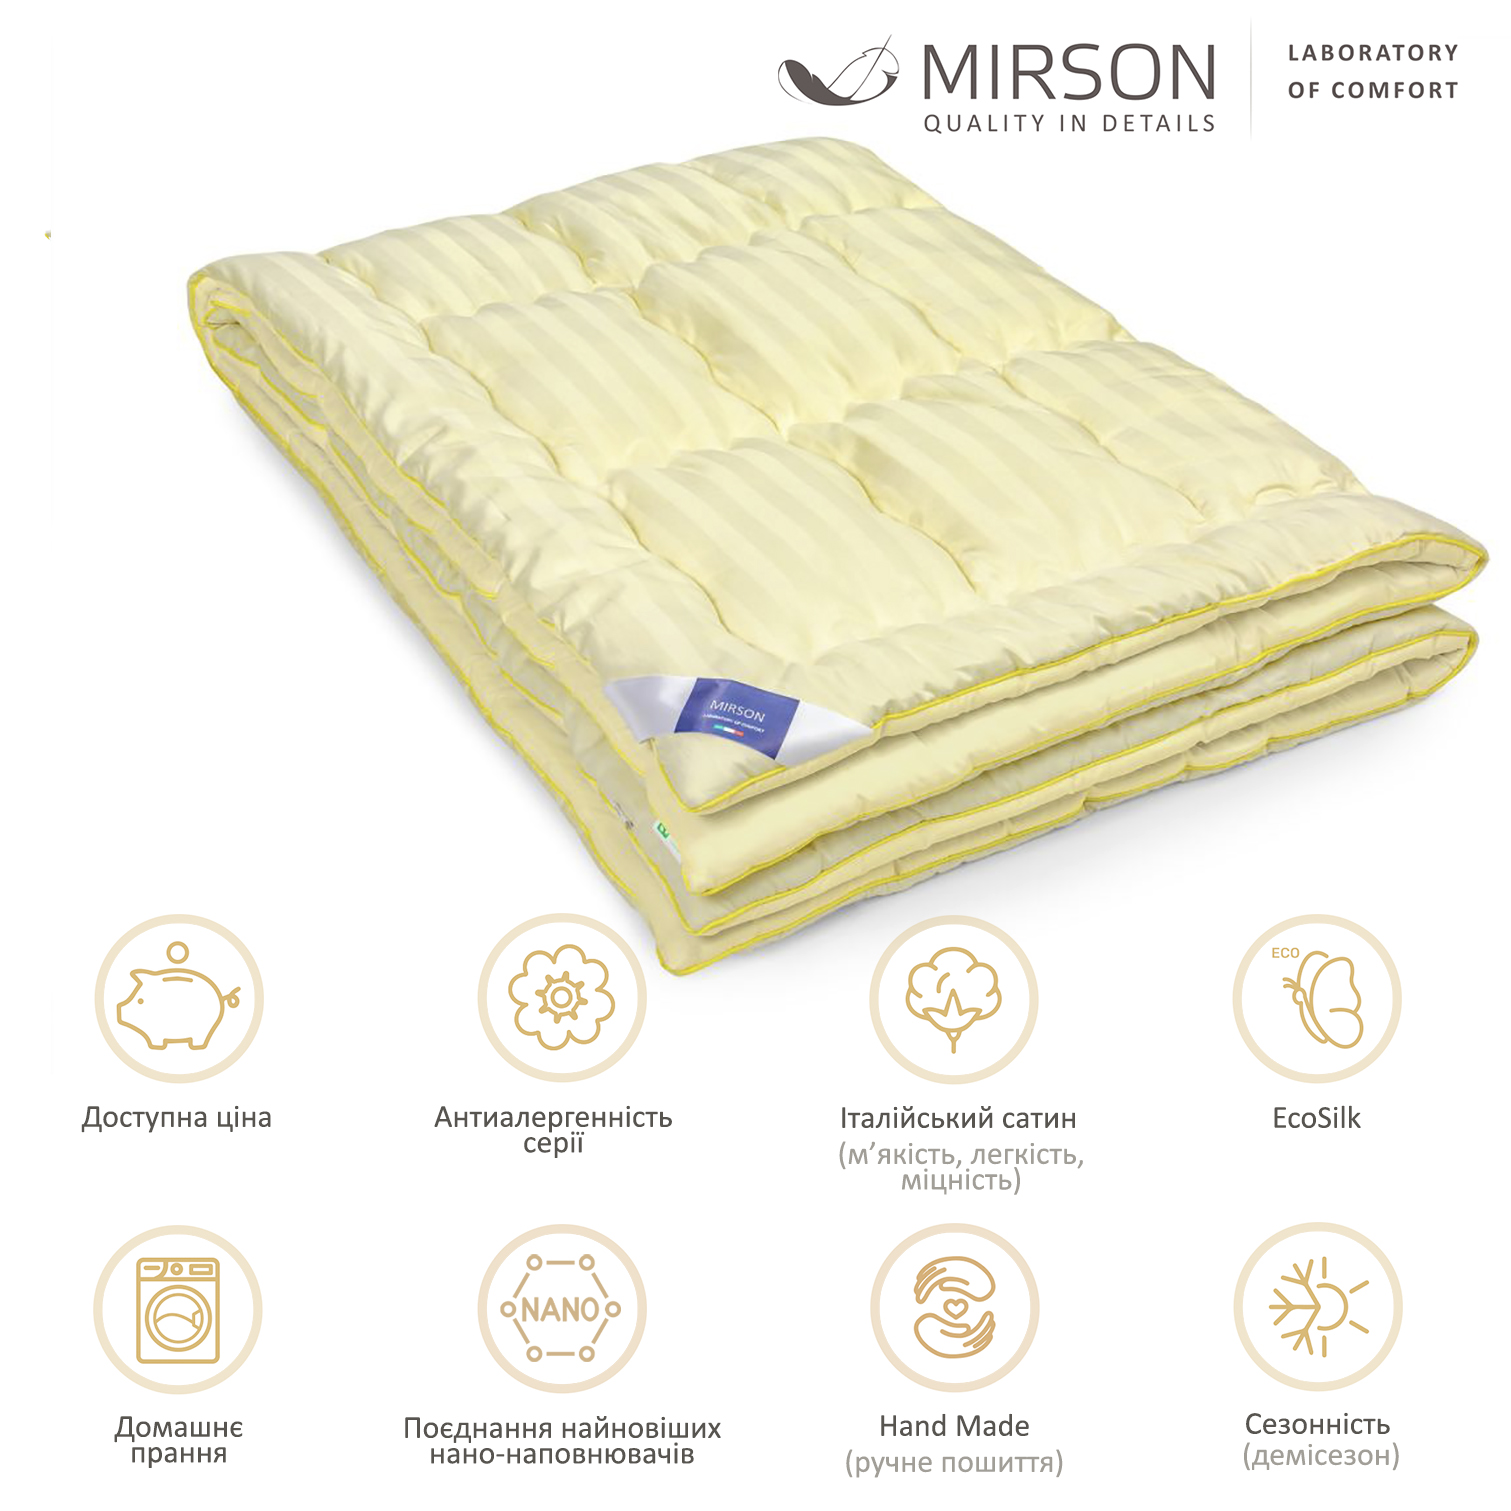 Одеяло антиаллергенное MirSon Carmela Hand Made EcoSilk №065, демисезонное, 220x240 см, светло-желтое - фото 4